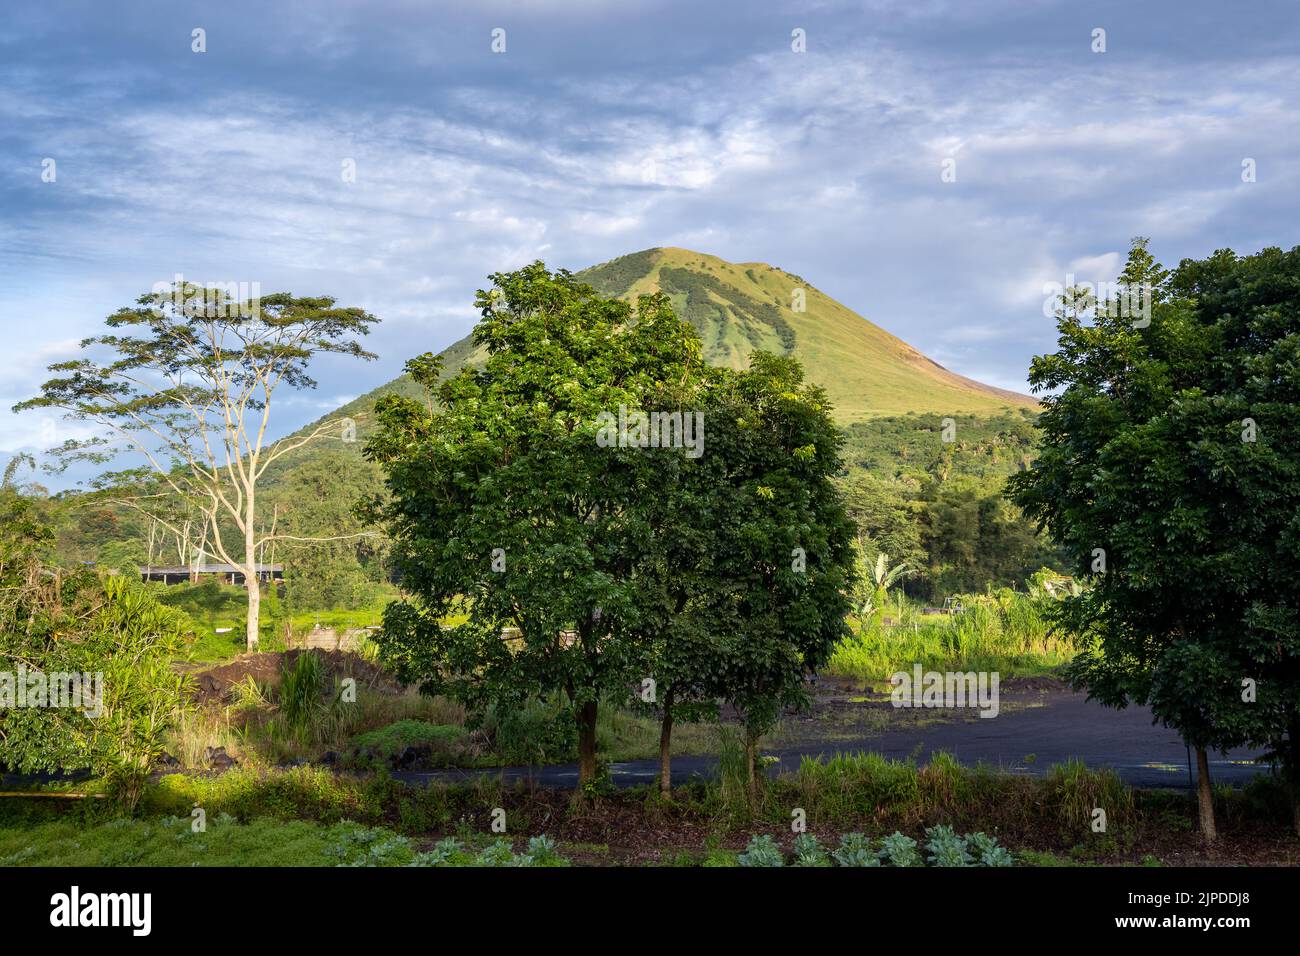 Le mont Lokon, ou Gunung Lokon, est un volcan actif près de Tomohon, au nord de Sulawesi, en Indonésie. Banque D'Images